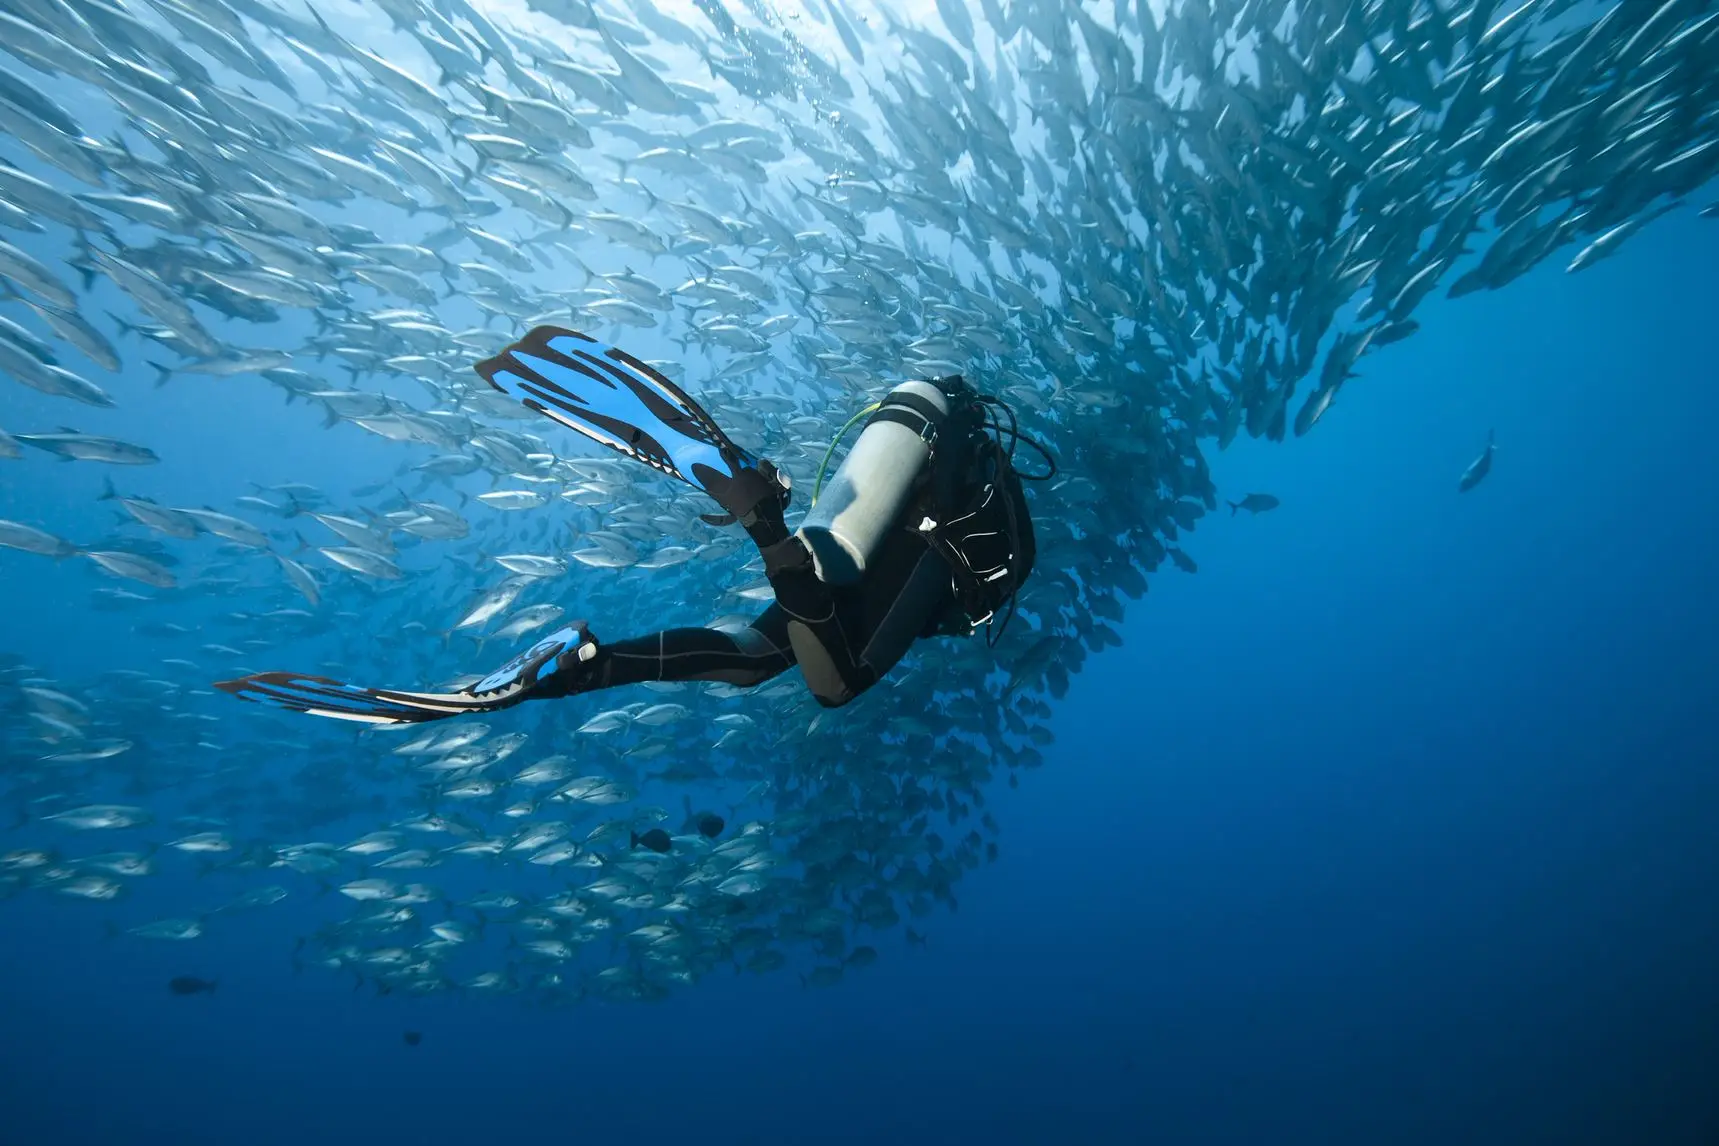 Mergulhador no fundo do mar, próximo a cardume de peixes.